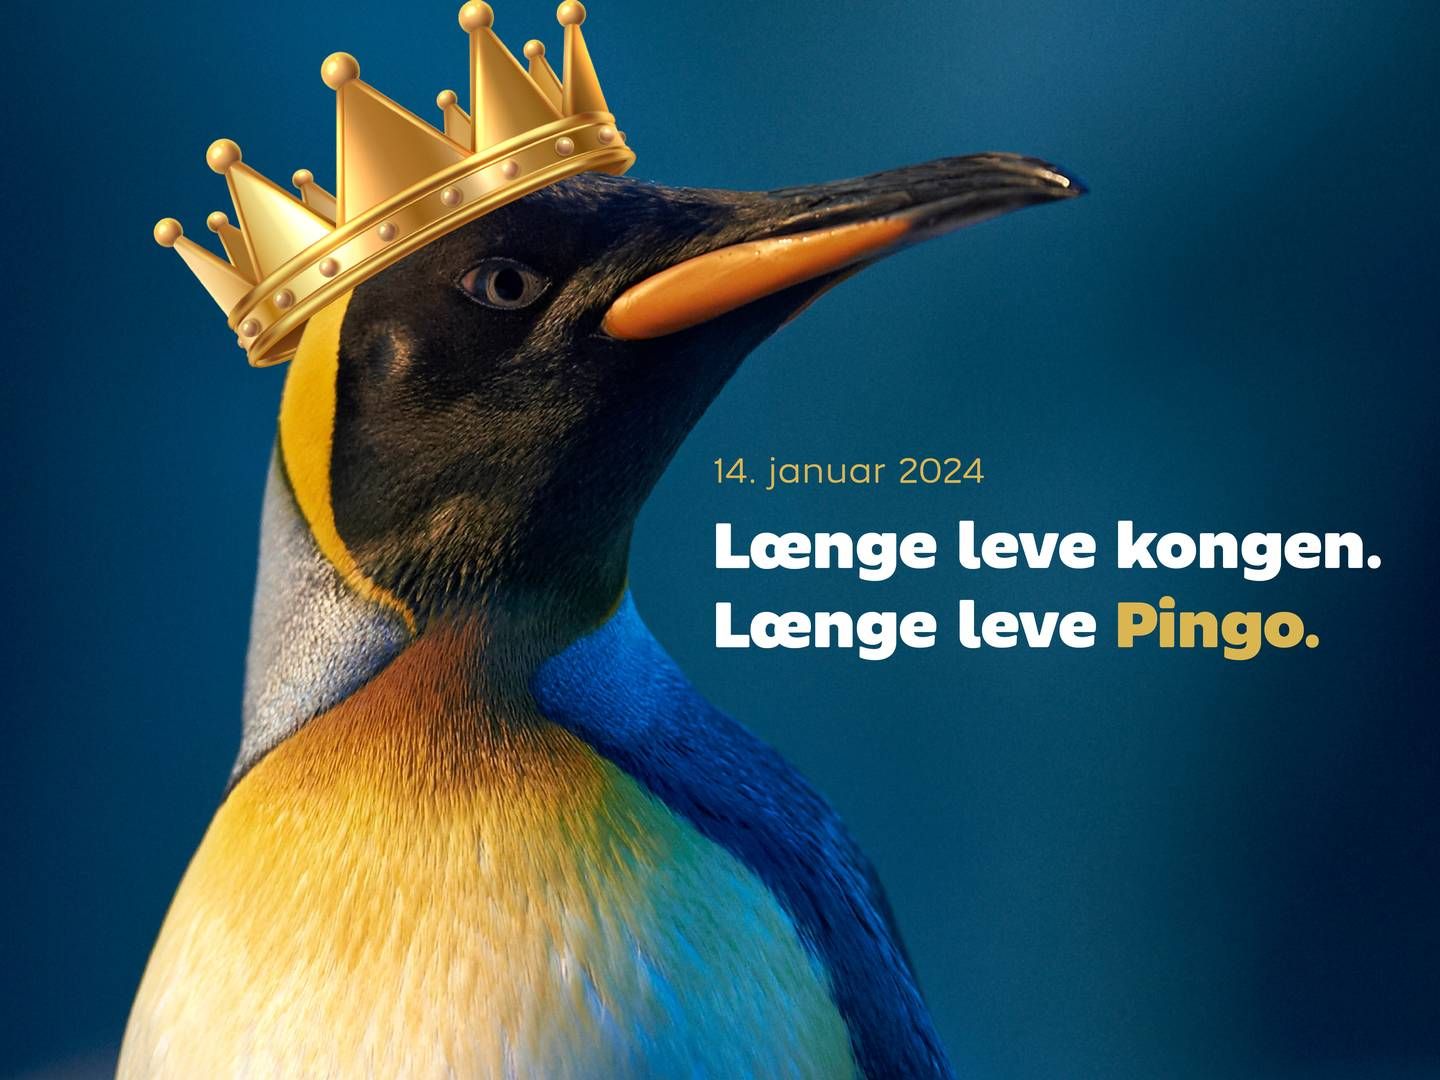 Odense Zoo med et aktuelt newsjacking-indspark i strømmen af lykønskninger til Danmarks nye konge. | Foto: PR